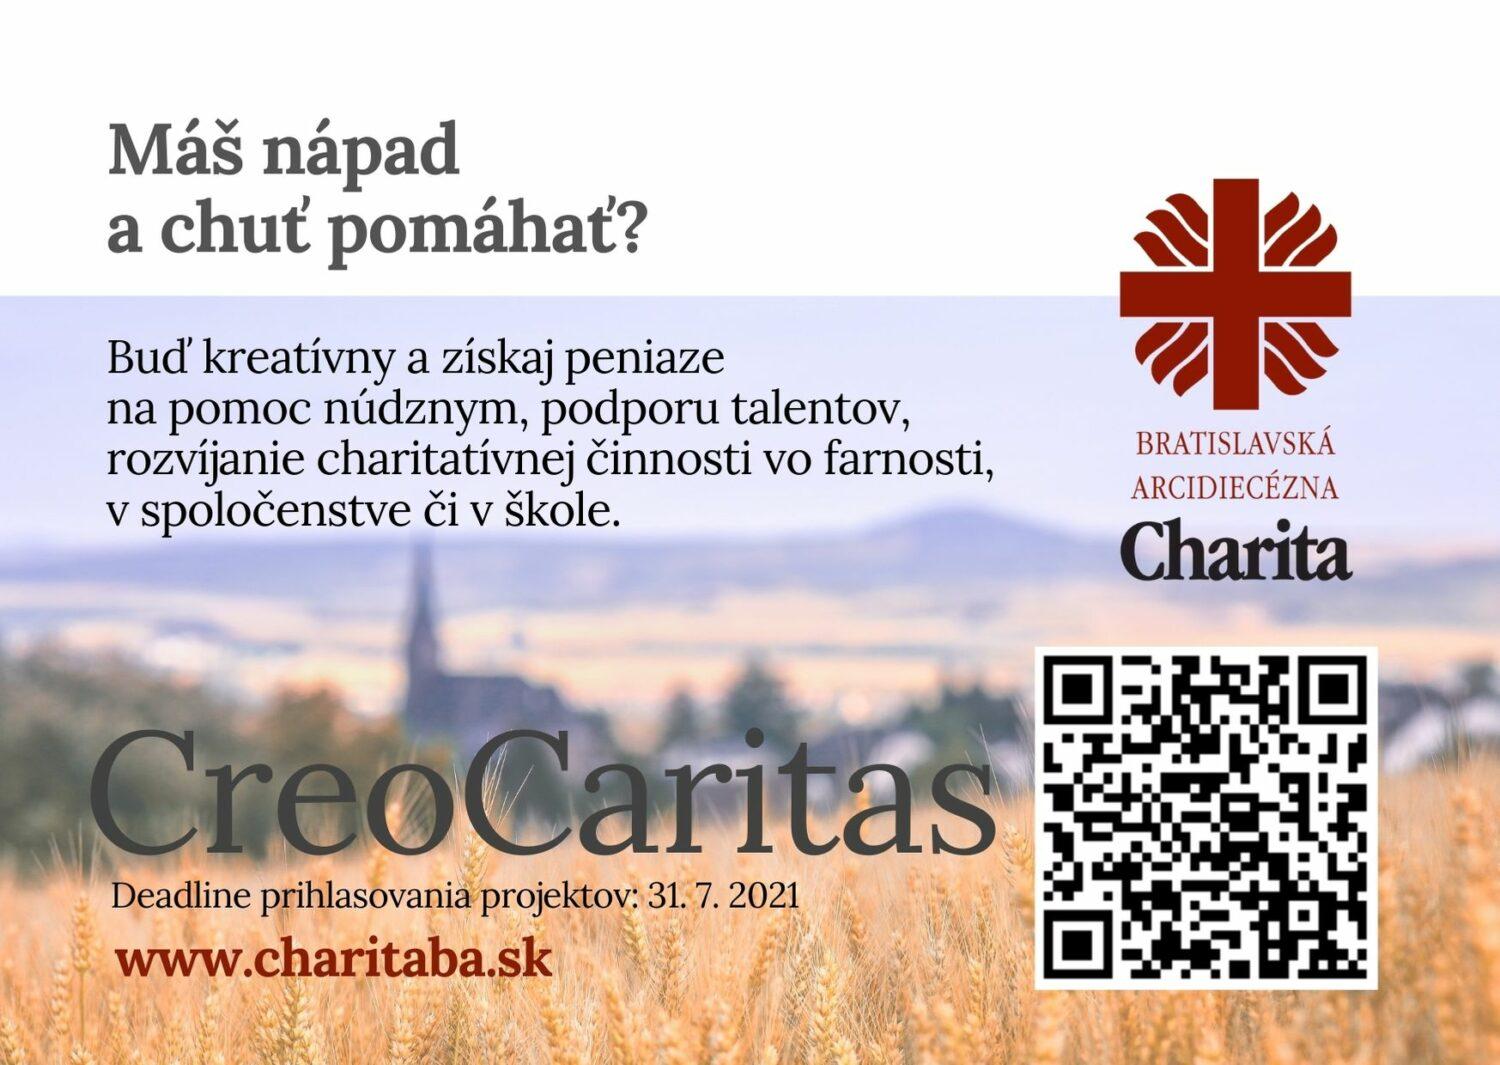 Bratislavská arcidiecézna charita prvýkrát vyhlasuje grantový program na podporu kreatívnej charitnej činnosti